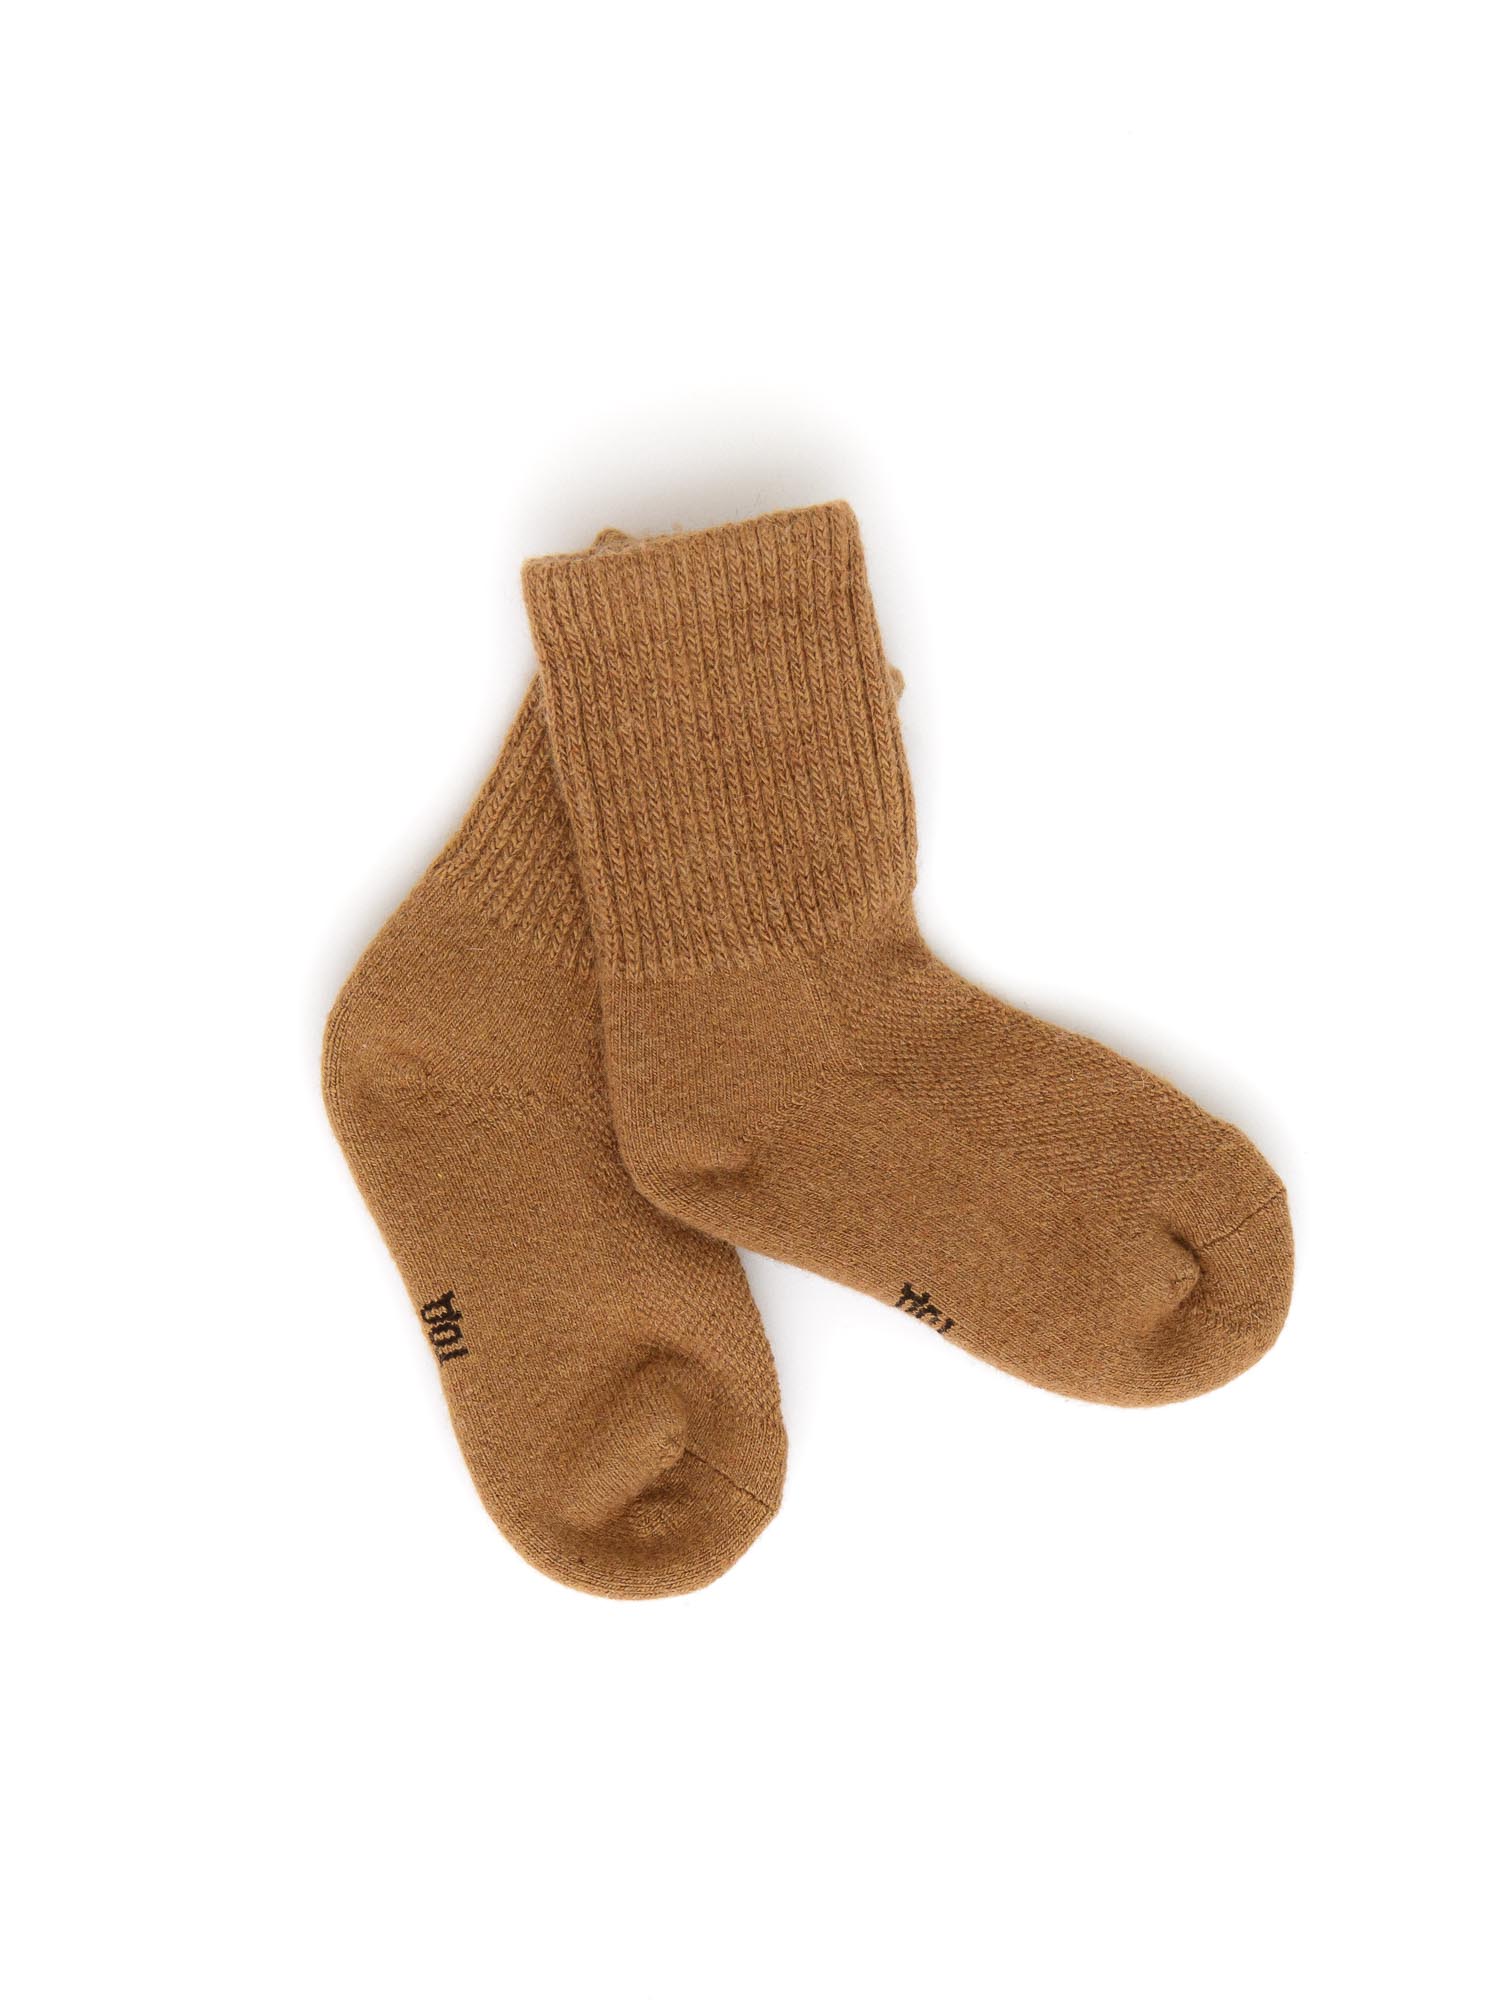 Детские носки из монгольской шерсти 4Р ТОД ОЙМС ХХК, цвет рыжий, размер 4 (16-18 см) - фото 1